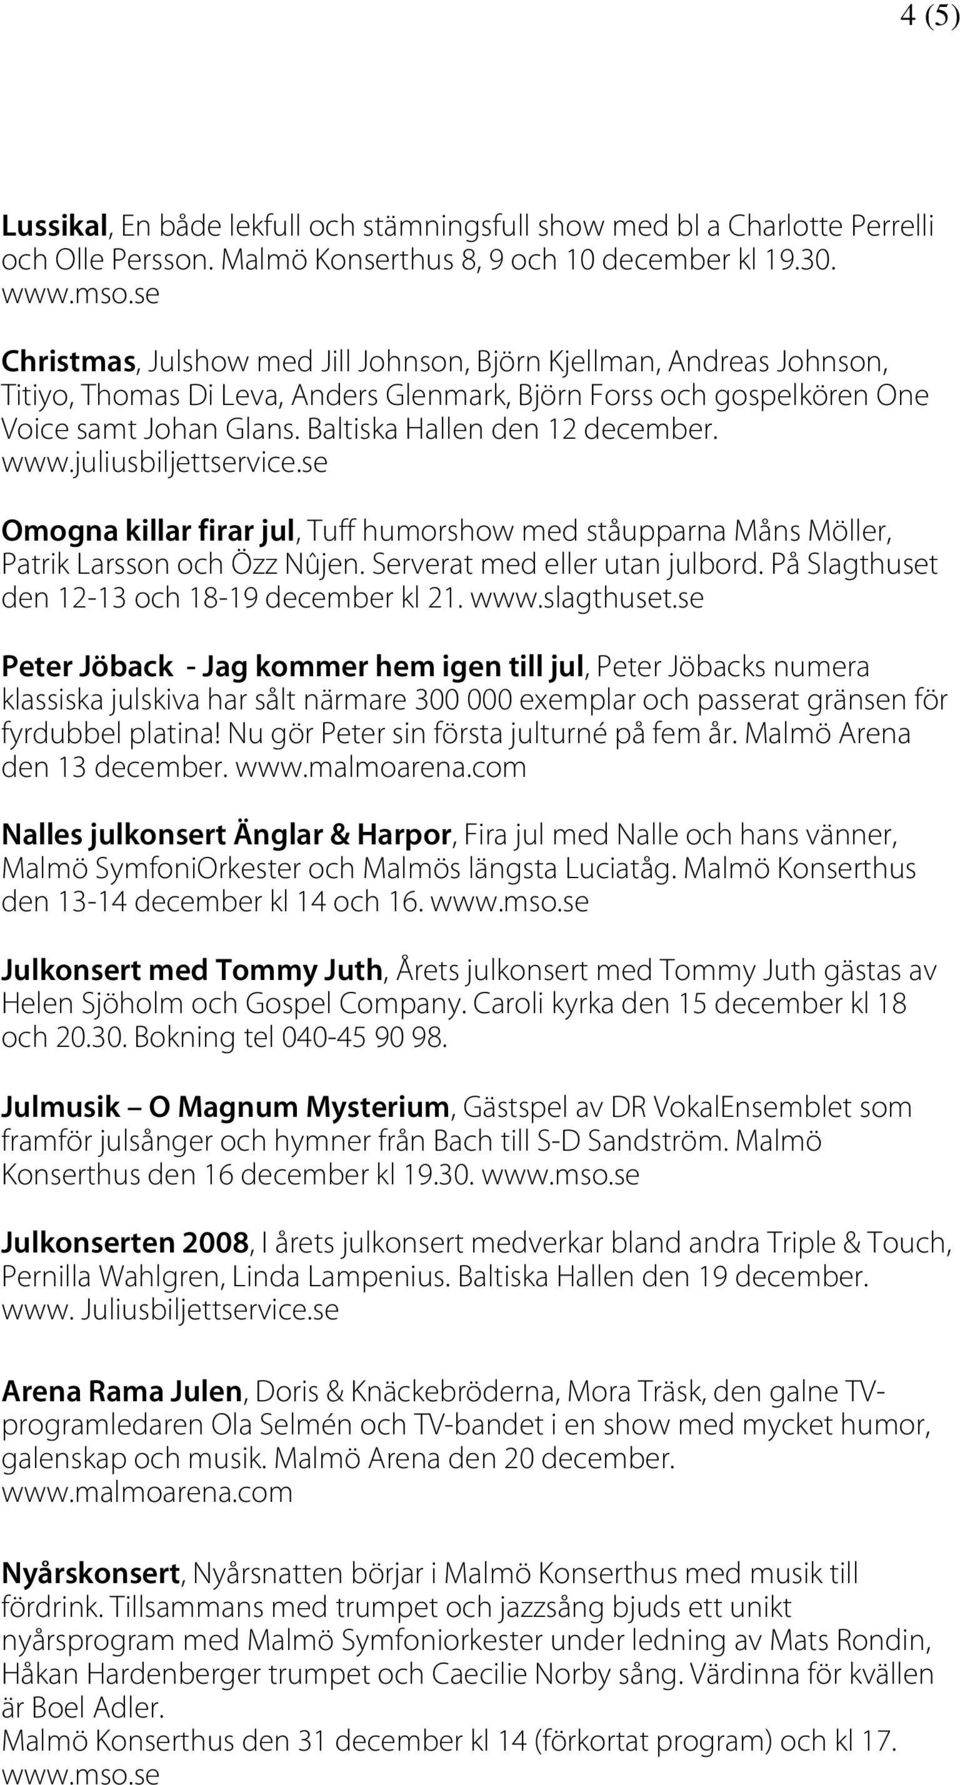 Baltiska Hallen den 12 december. www.juliusbiljettservice.se Omogna killar firar jul, Tuff humorshow med ståupparna Måns Möller, Patrik Larsson och Özz Nûjen. Serverat med eller utan julbord.